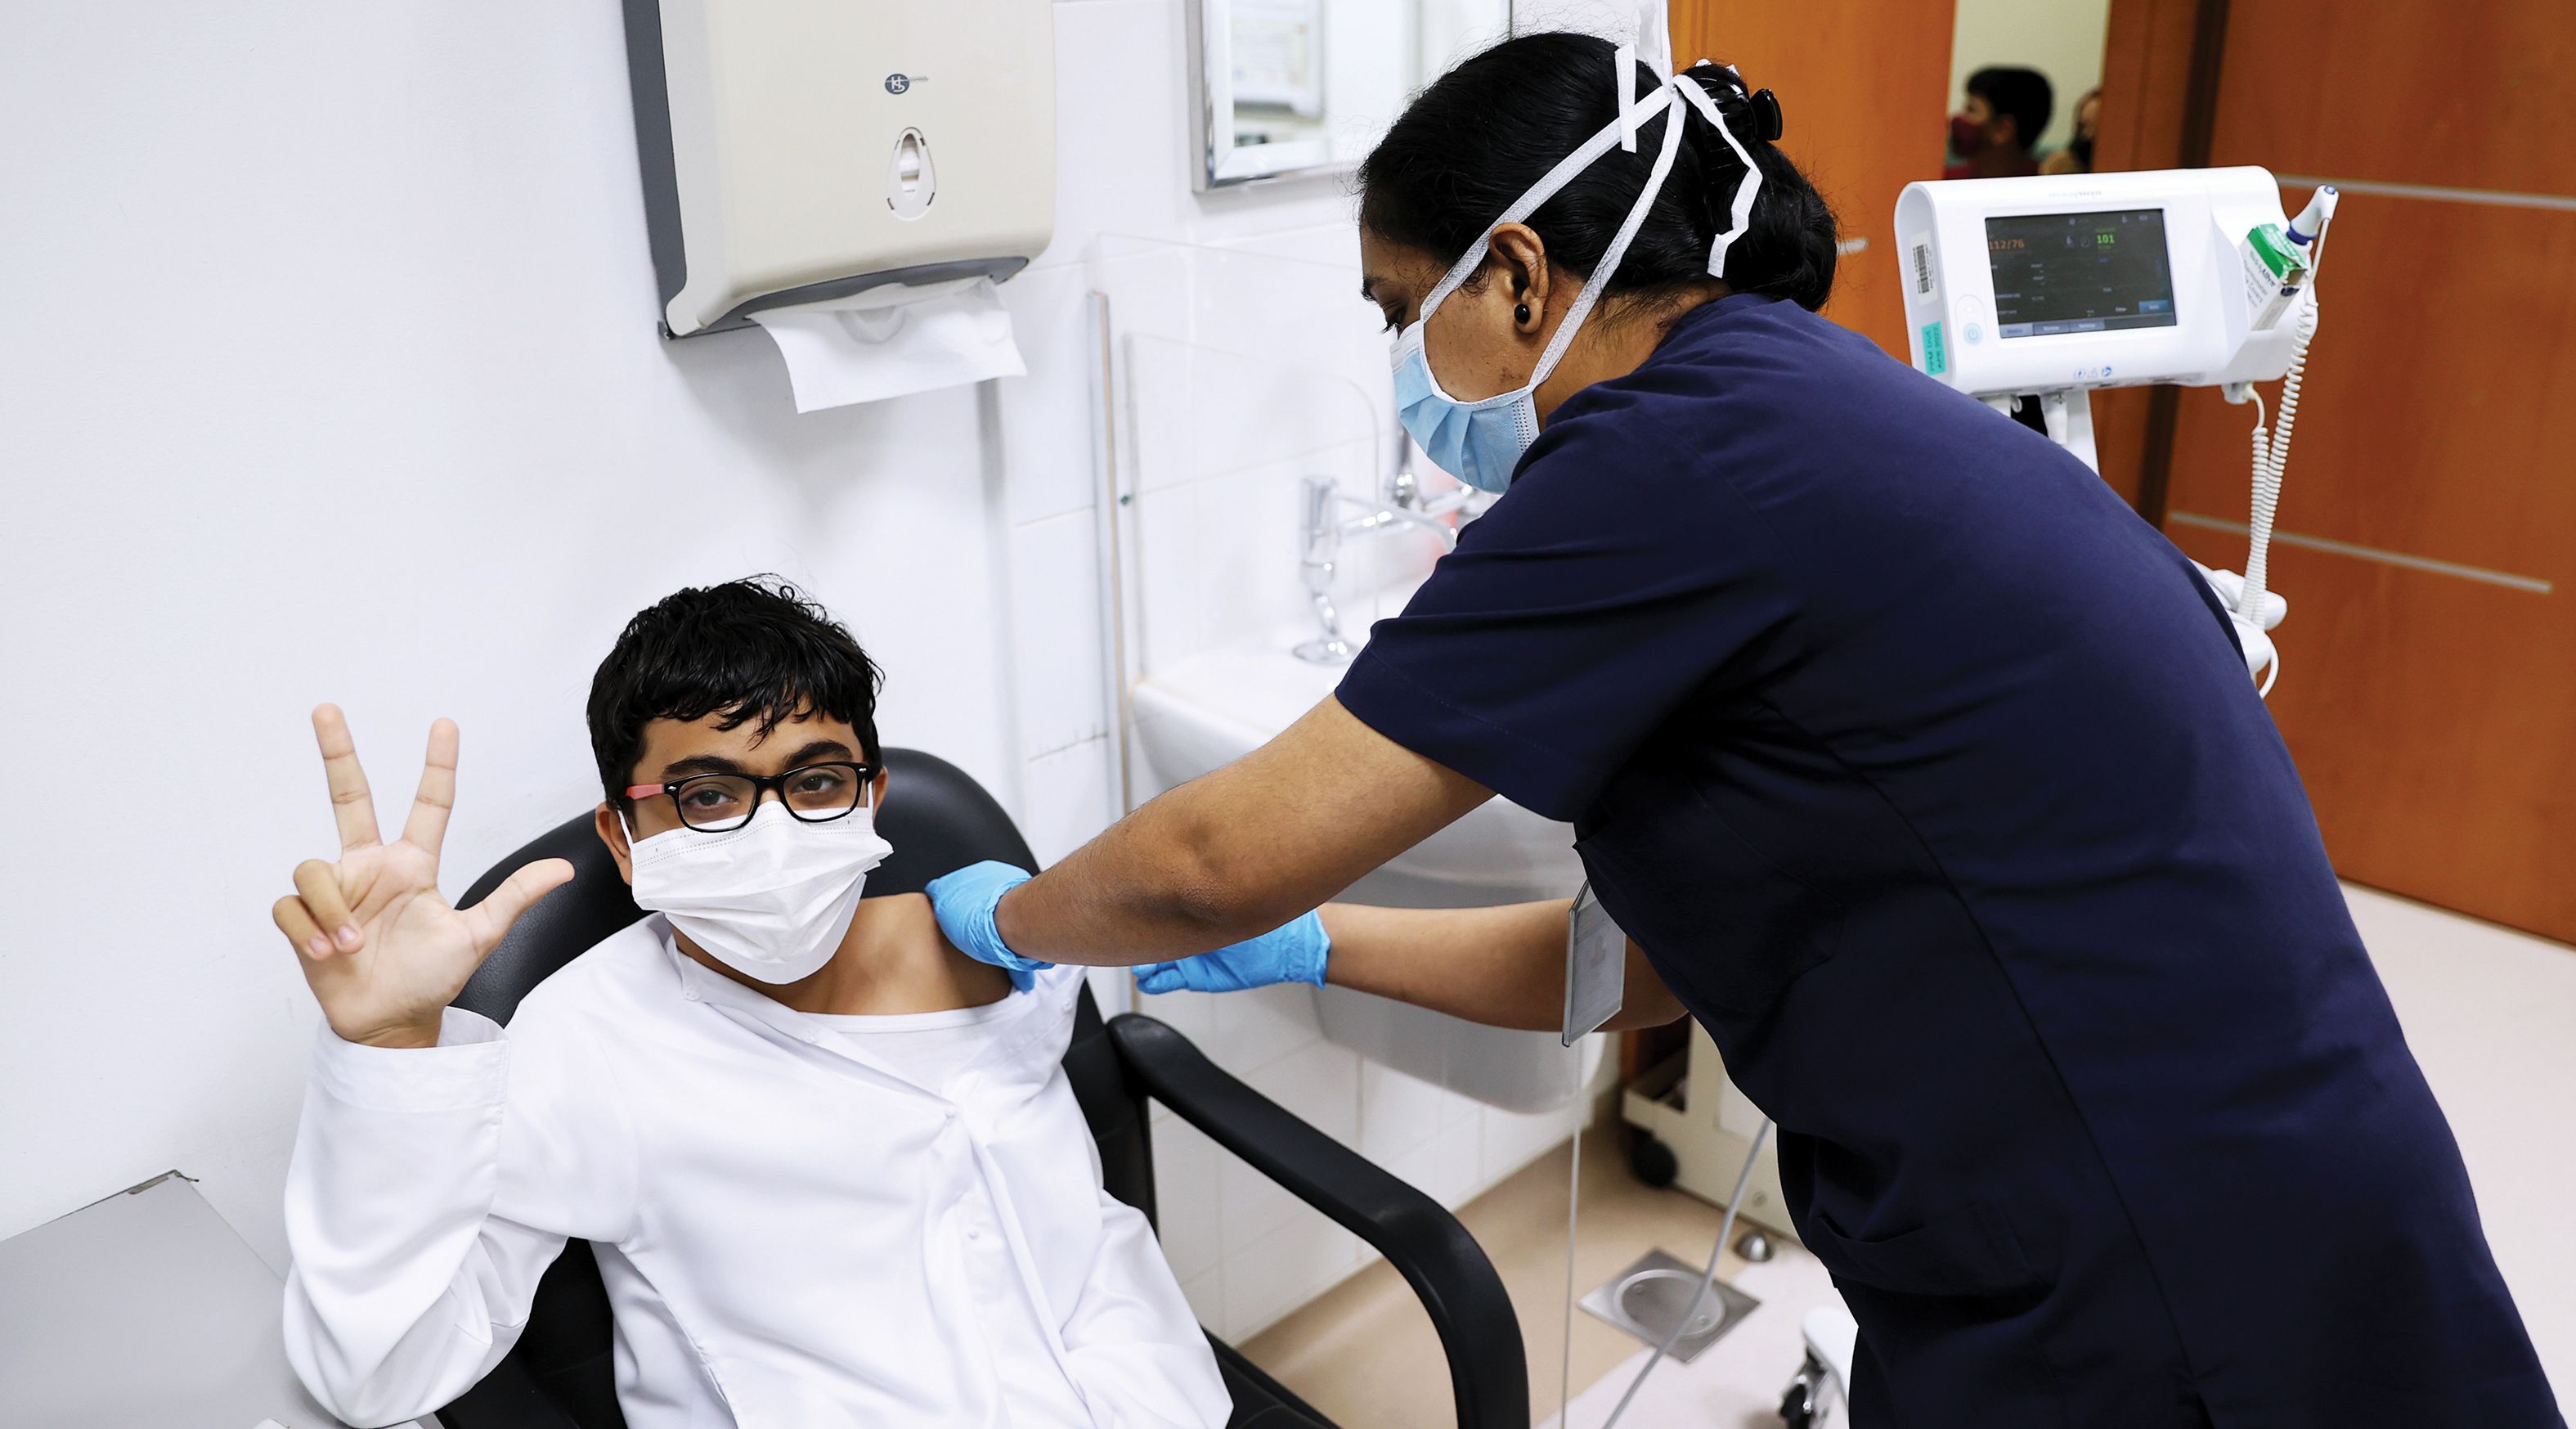 سلطات دبي تمنع اصطحاب الأطفال الذين لم يتم تطعيمهم ضد فيروس كورونا في التجمعات